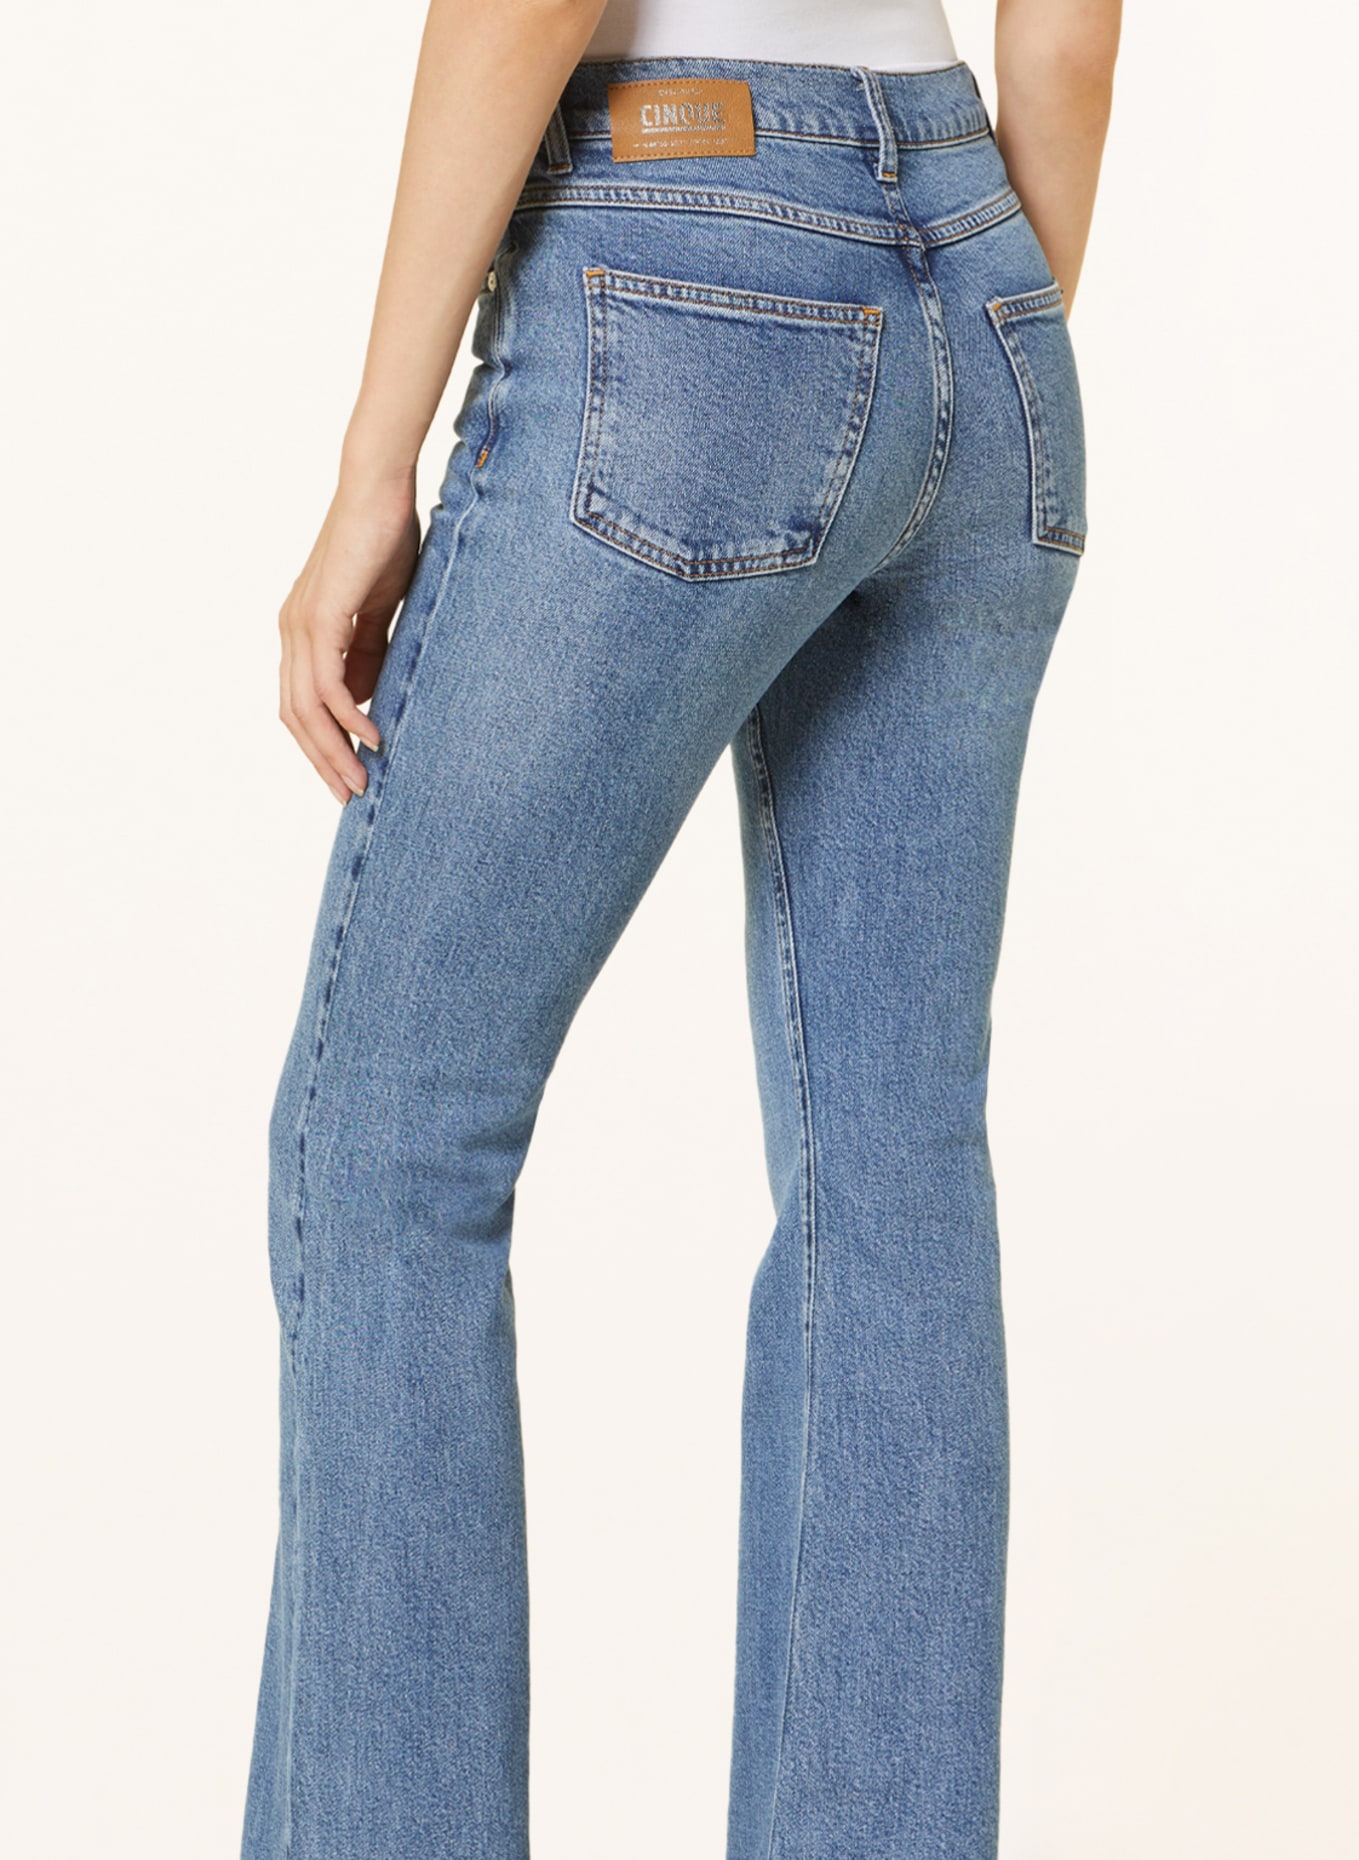 CINQUE Flared jeans, Color: 64 BLAU (Image 5)